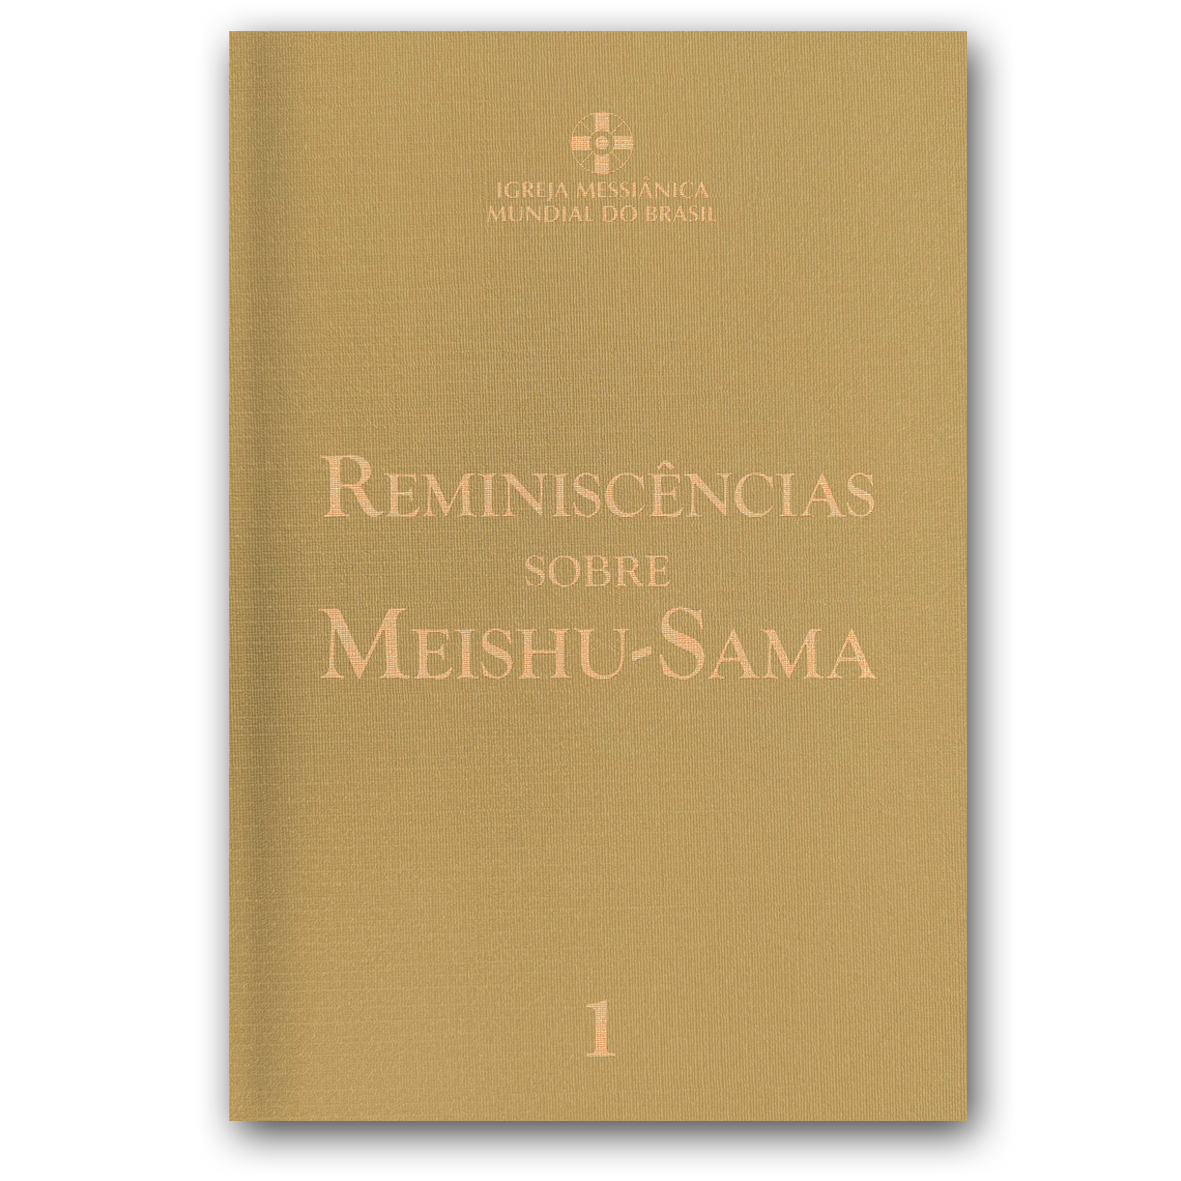 Reminiscências sobre Meishu-Sama - Vol.1 - Revisado